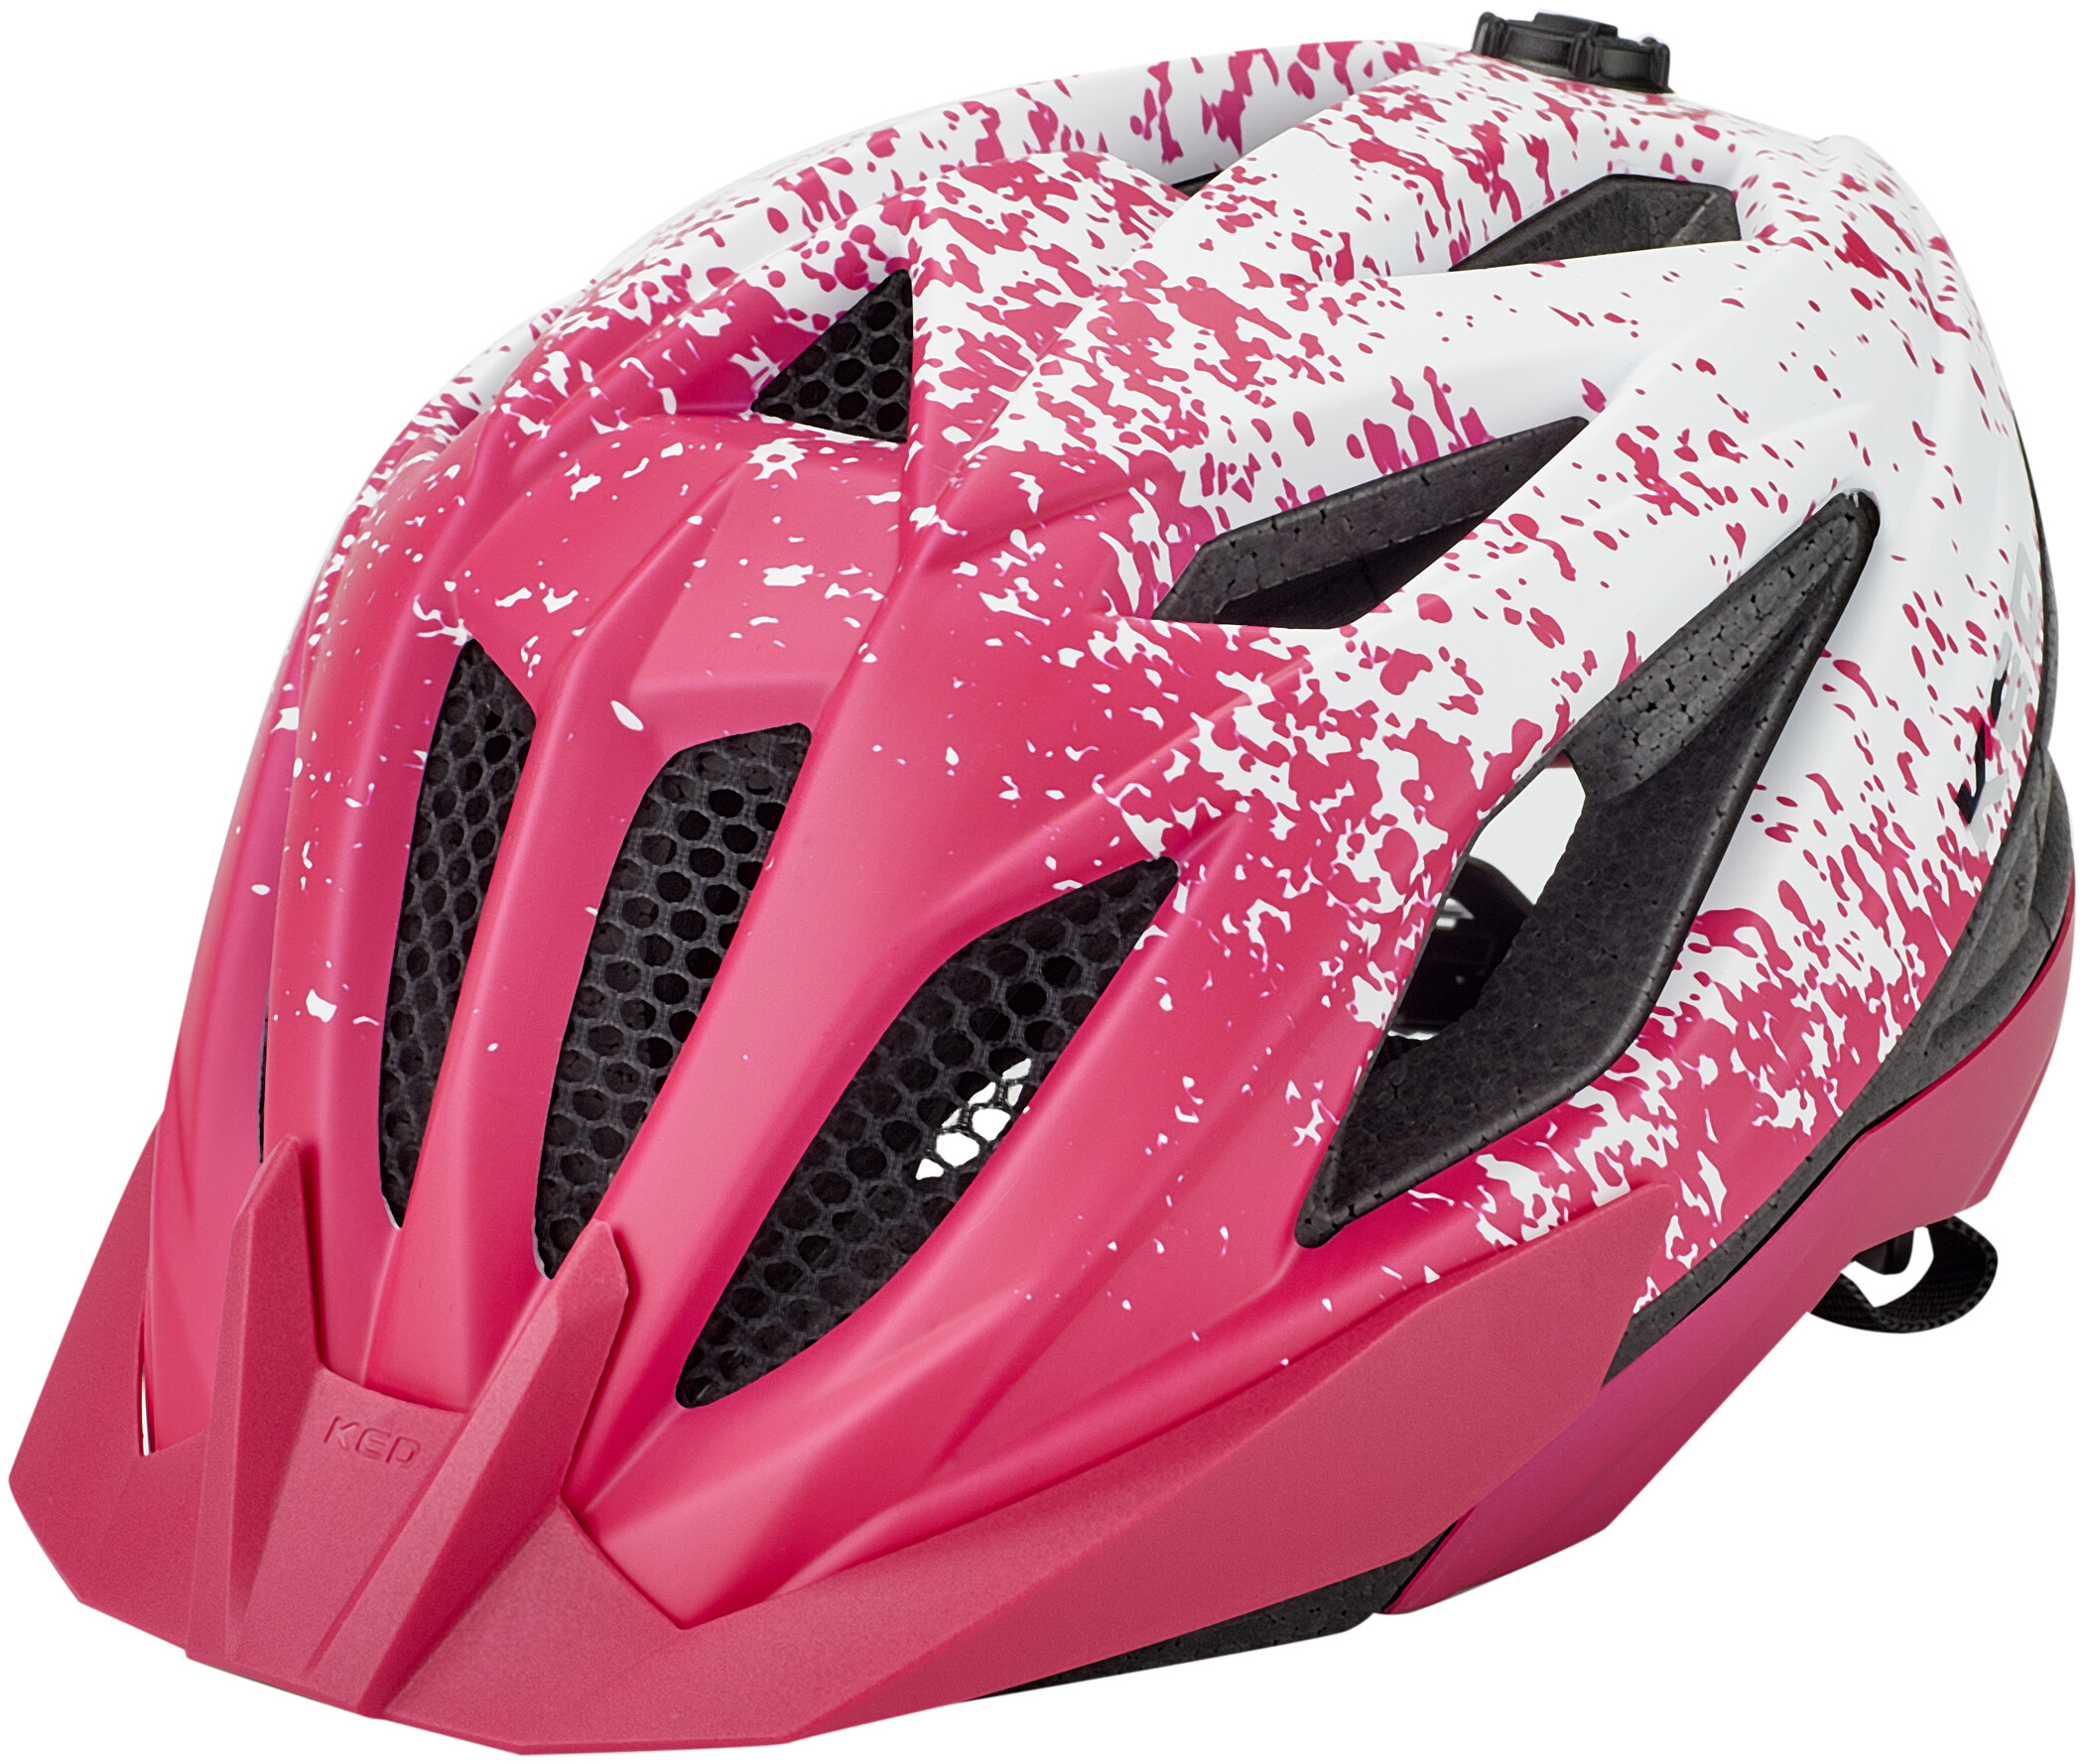 M 52-59cm KED Mädchen Fahrradhelm Jugend Helm STATUS JUNIOR pink Gr S 49-54cm o 